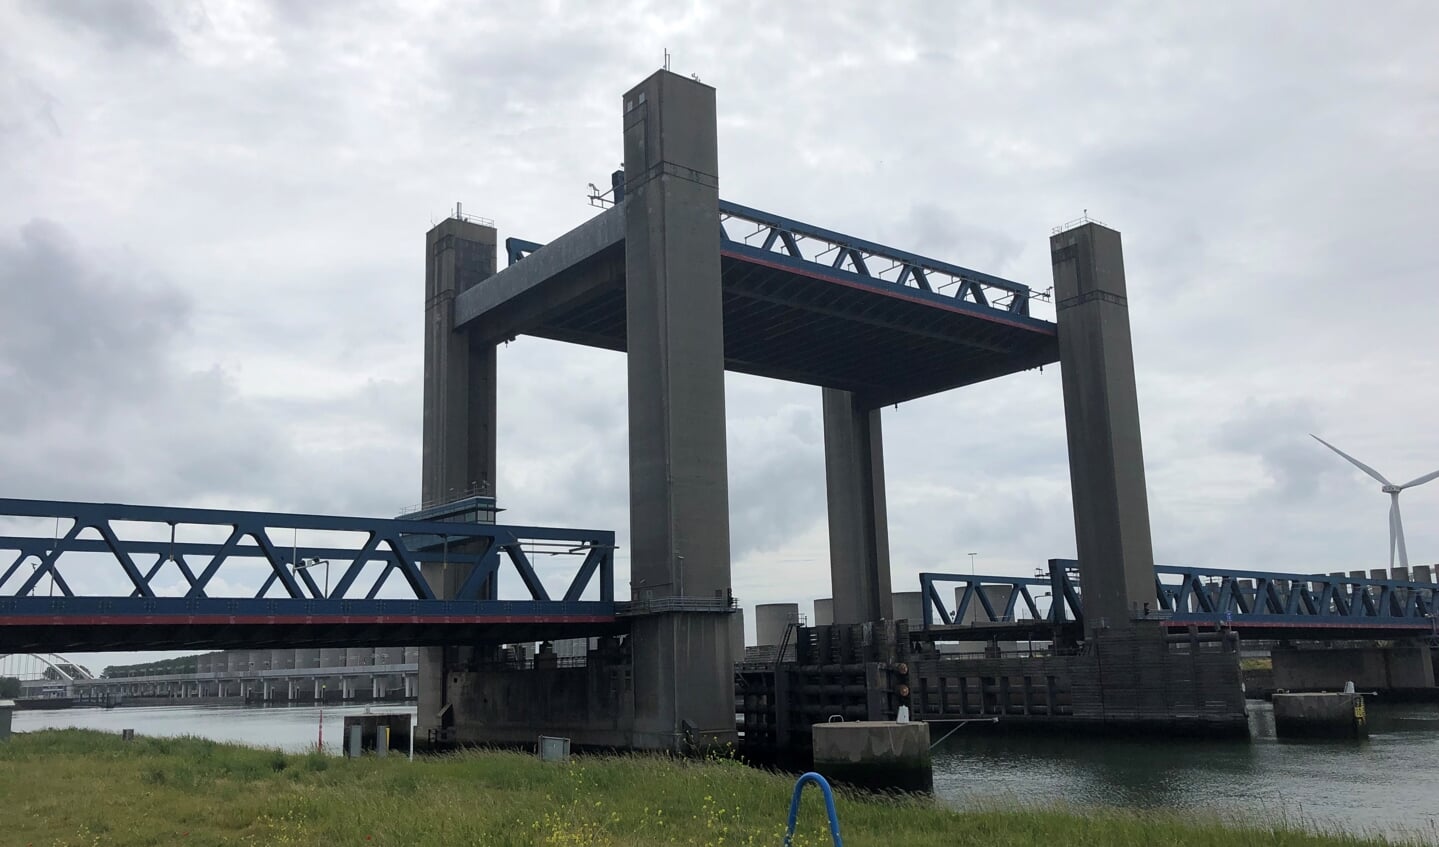 De Calandbrug bij Rozenburg. Het herstel van de defecte hefbrug over het Calandkanaal duurt waarschijnlijk een paar maanden. De brug staat nu constant open voor het scheepvaartverkeer. Foto's: Peter Zoetmulder   